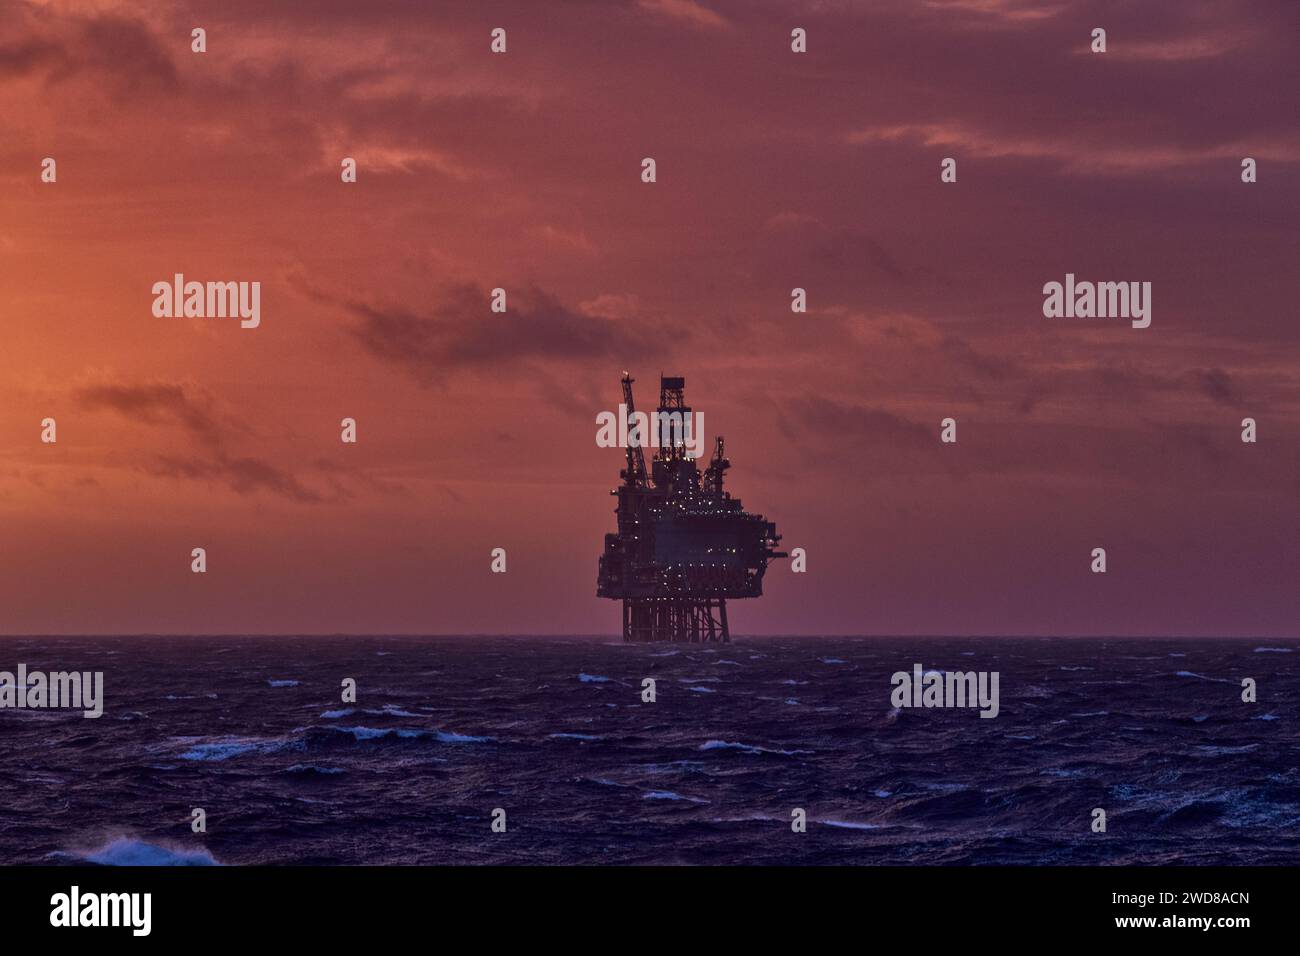 Vue panoramique de l'installation pétrolière et gazière offshore dans la mer pendant un beau coucher de soleil coloré en été. Banque D'Images